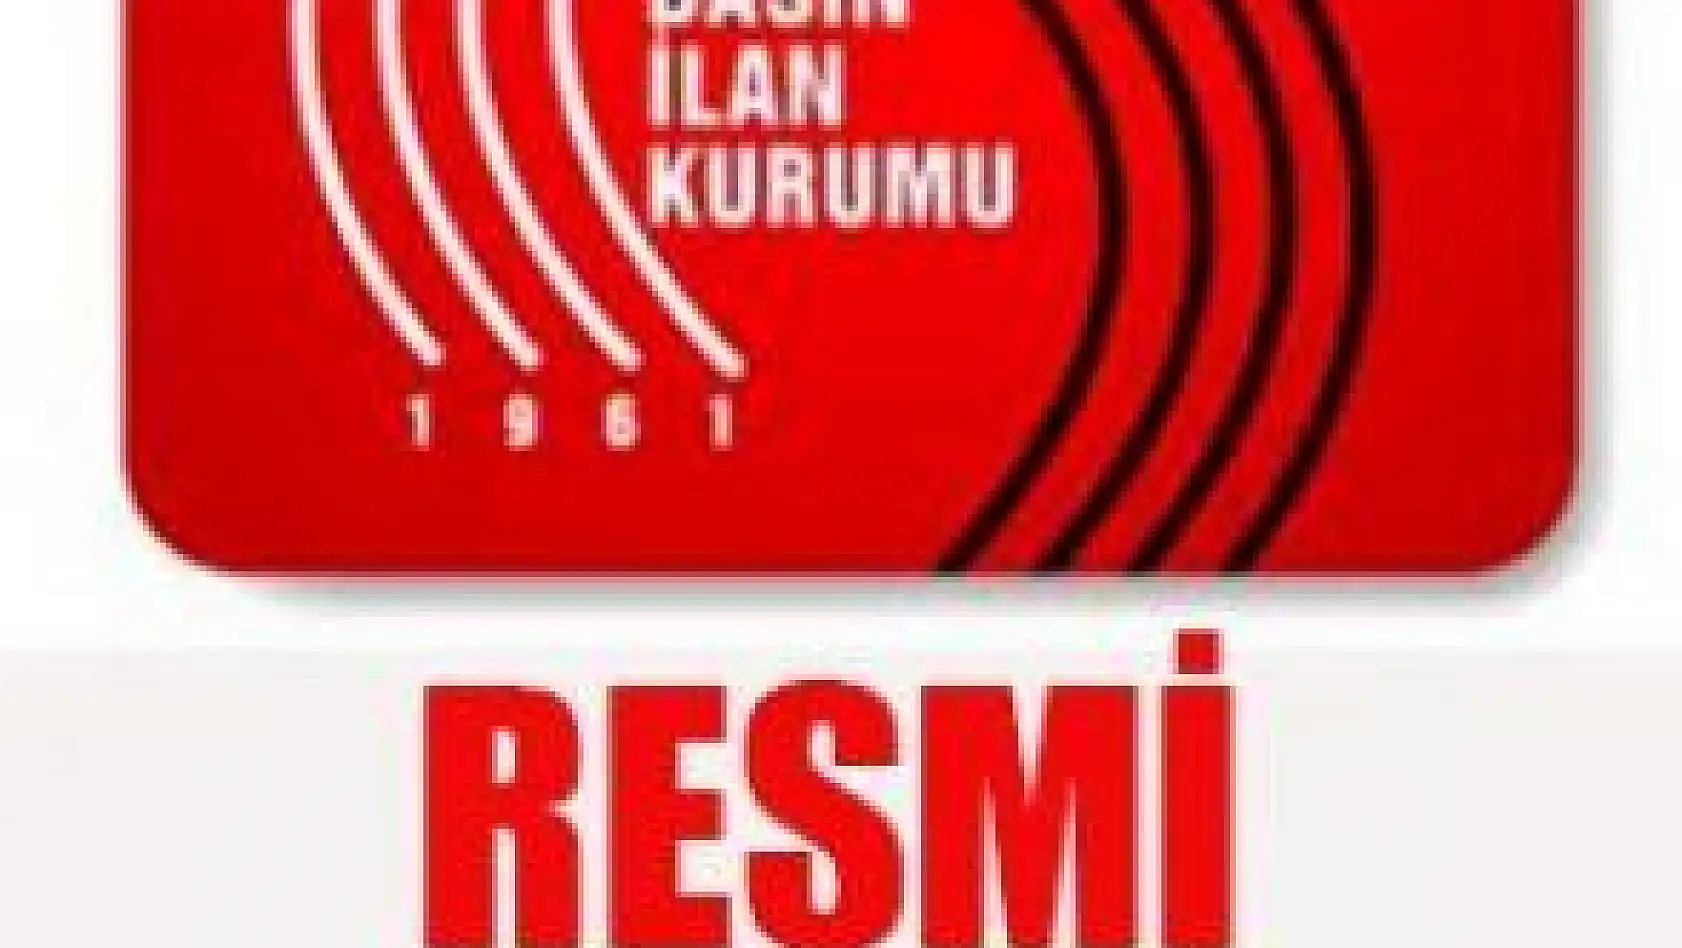 Basin ilan Kurumu - Kayseri Büyükşehir Belediyesi